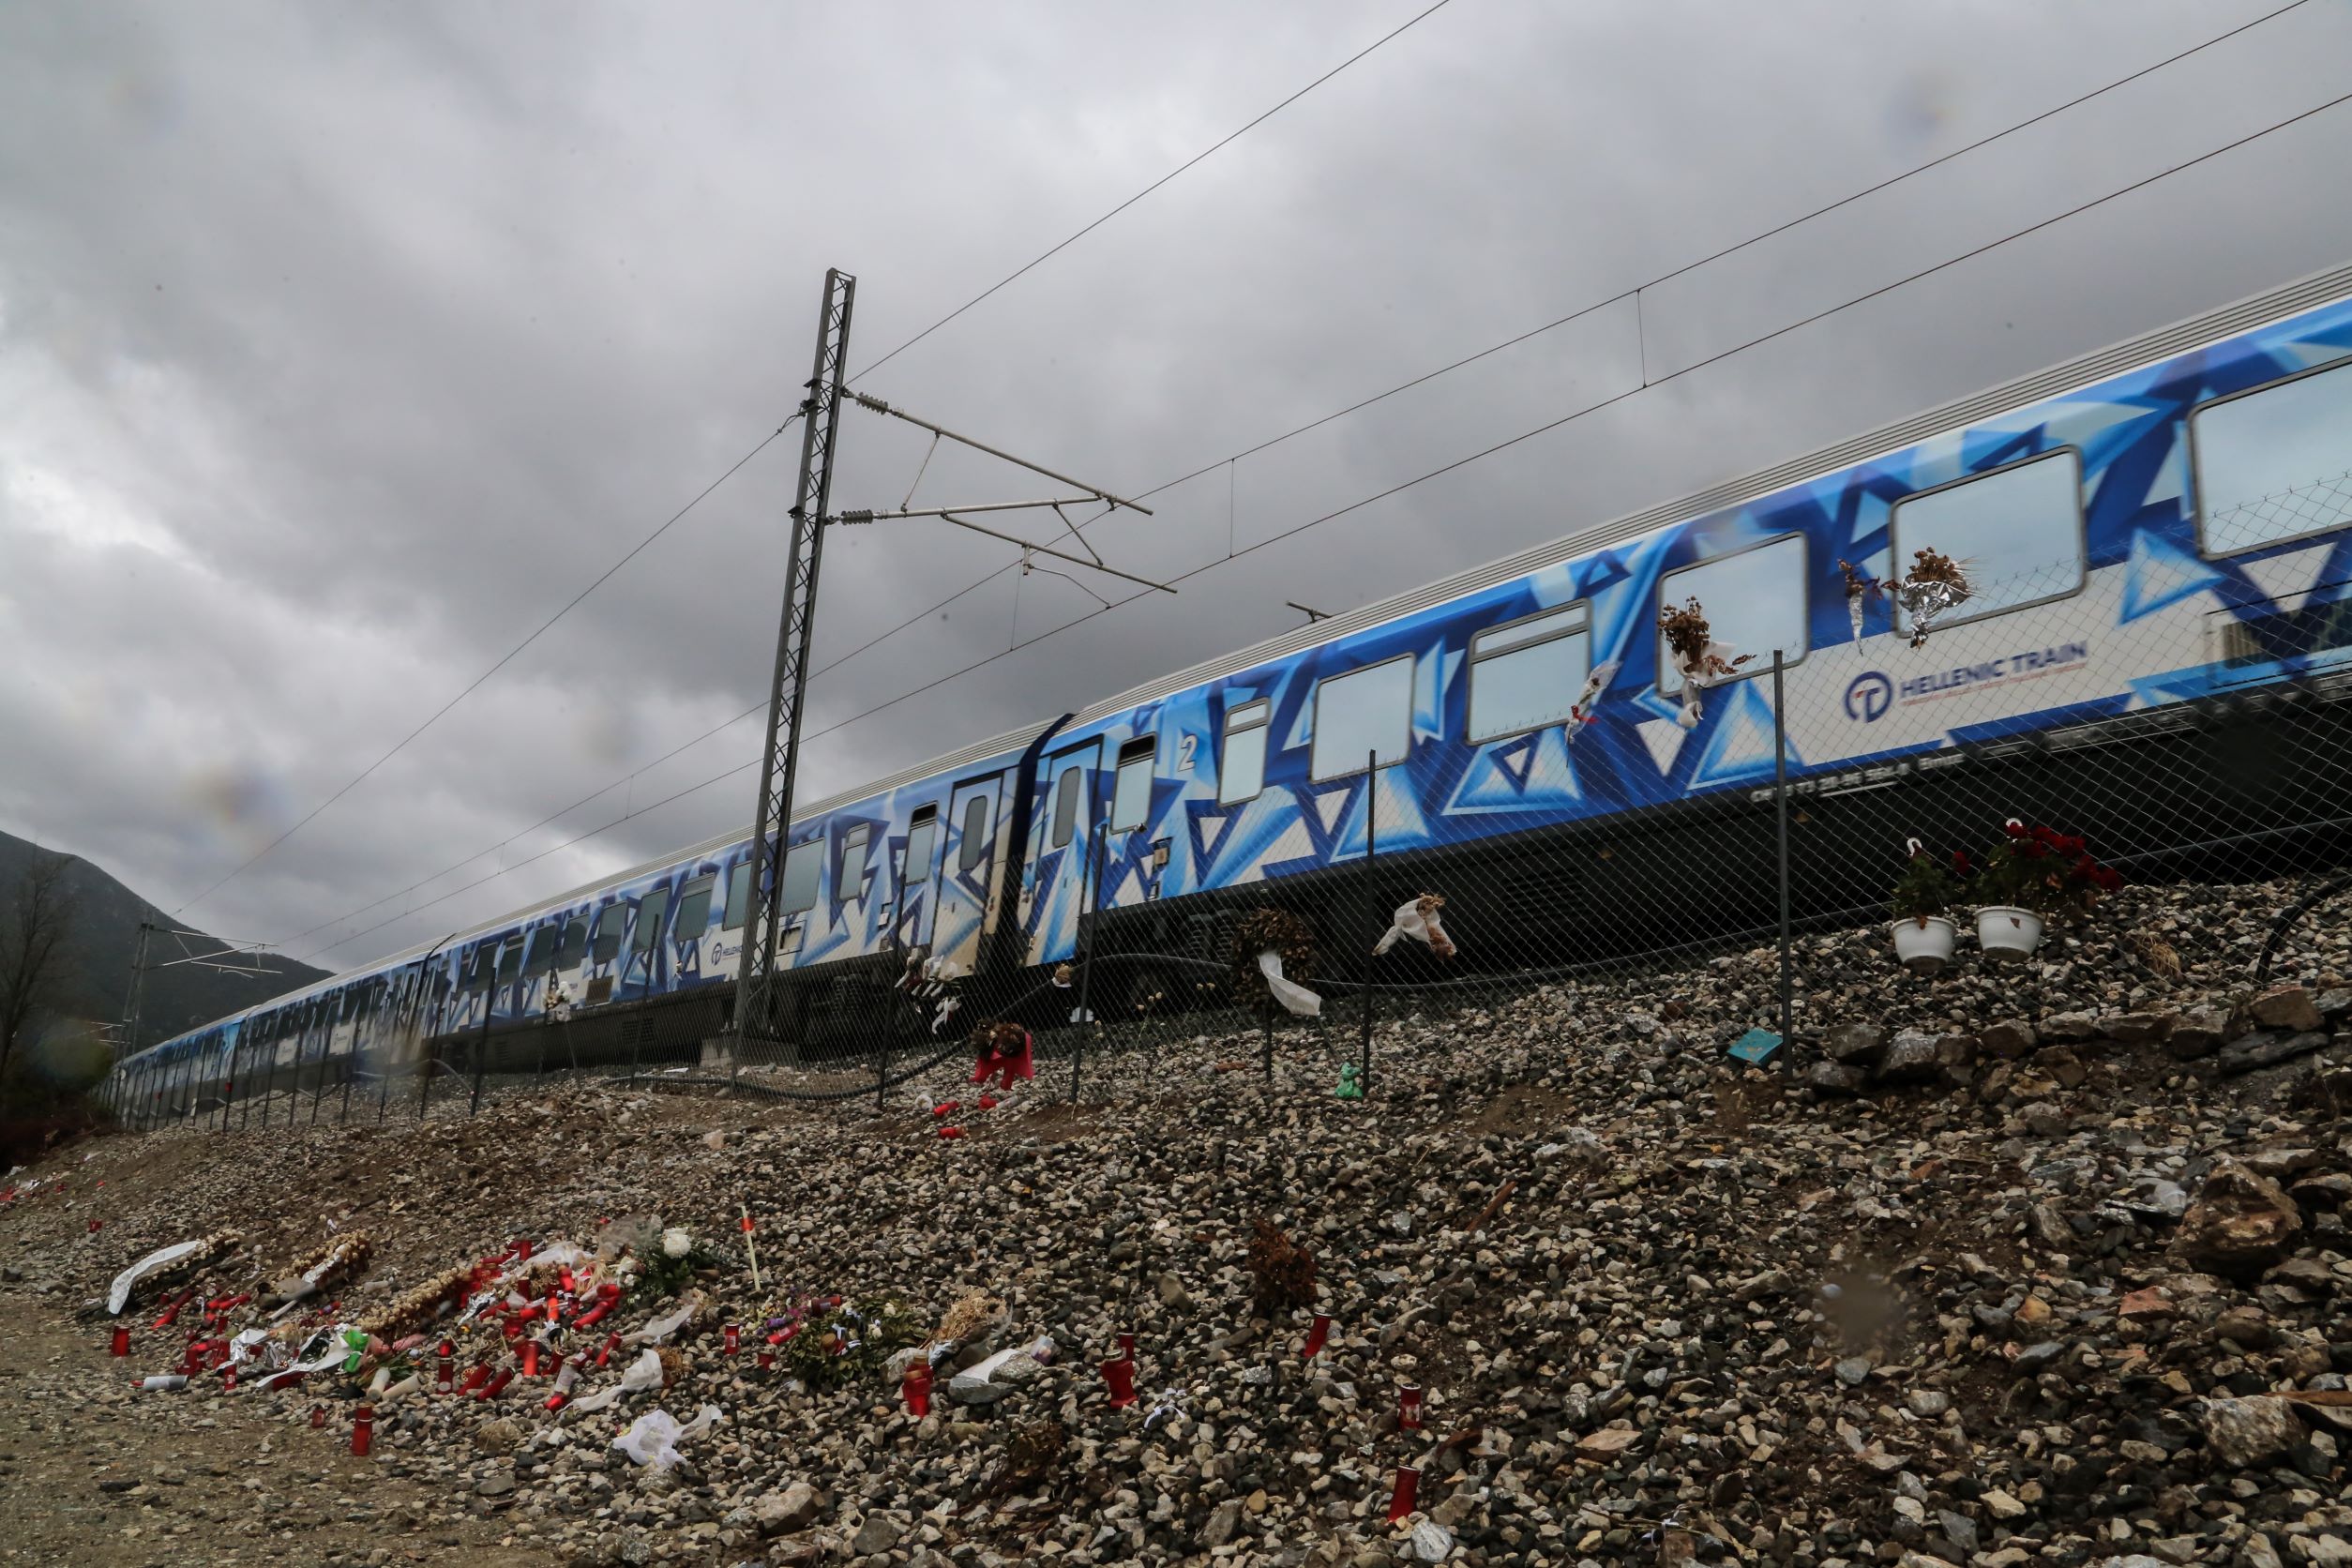 Διευθ. Σύμβουλος ΟΣΕ στην ΕΡΤ: Μεγάλη η πληγή μετά από την τραγωδία των Τεμπών, ωστόσο το πιβατικό κοινό εμπιστεύεται το τρένο